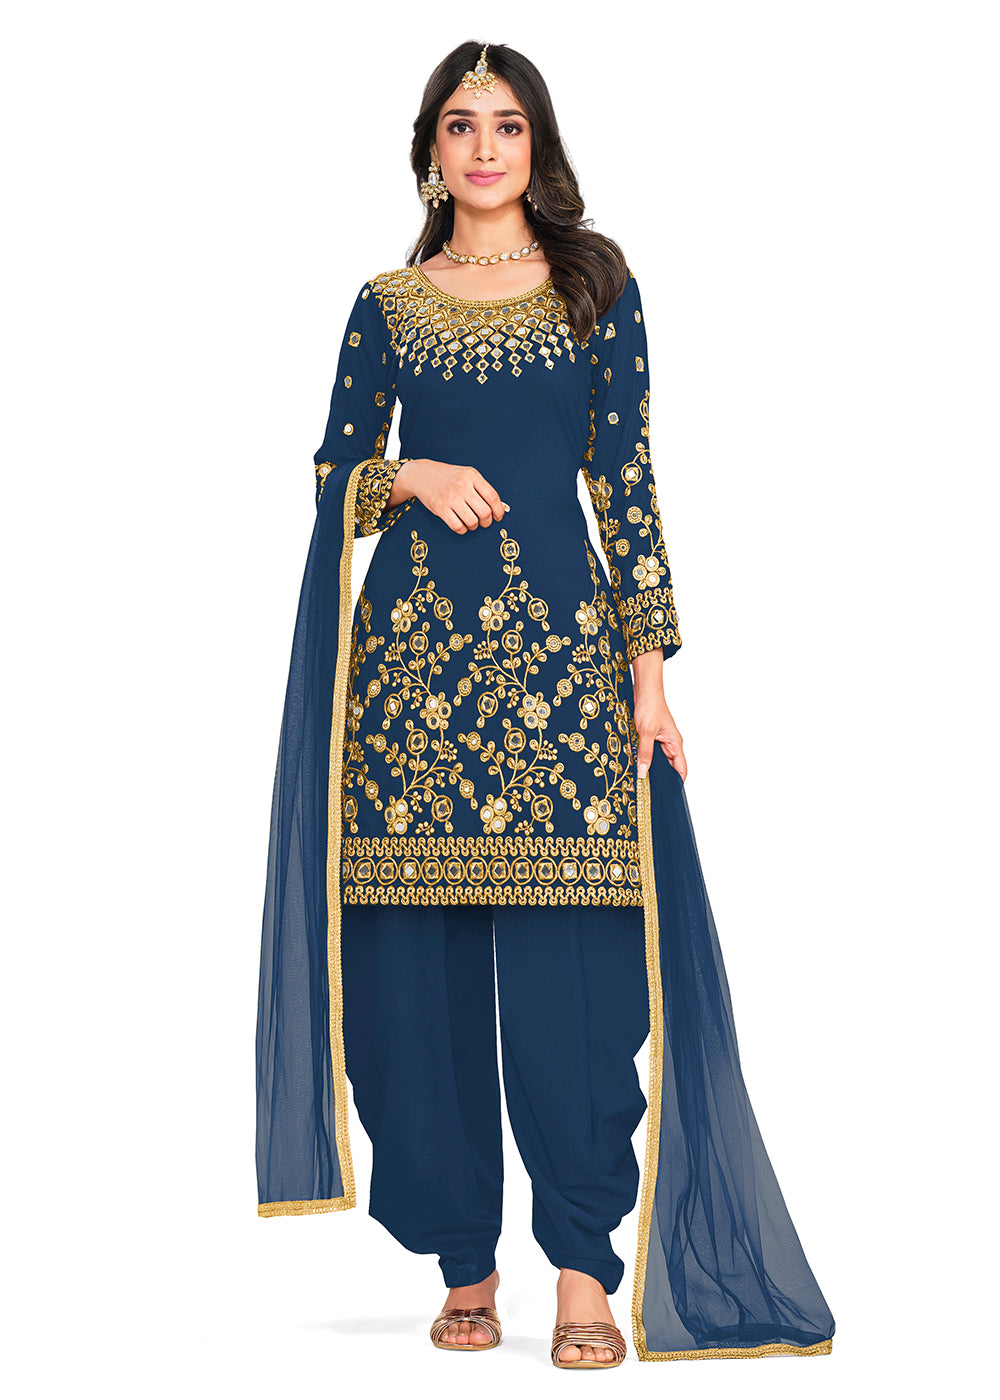 Khadi Work Punjabi Suits Online In Latest Styles at Rs 450 | Punjabi Ladies  Suit in Surat | ID: 25500251573